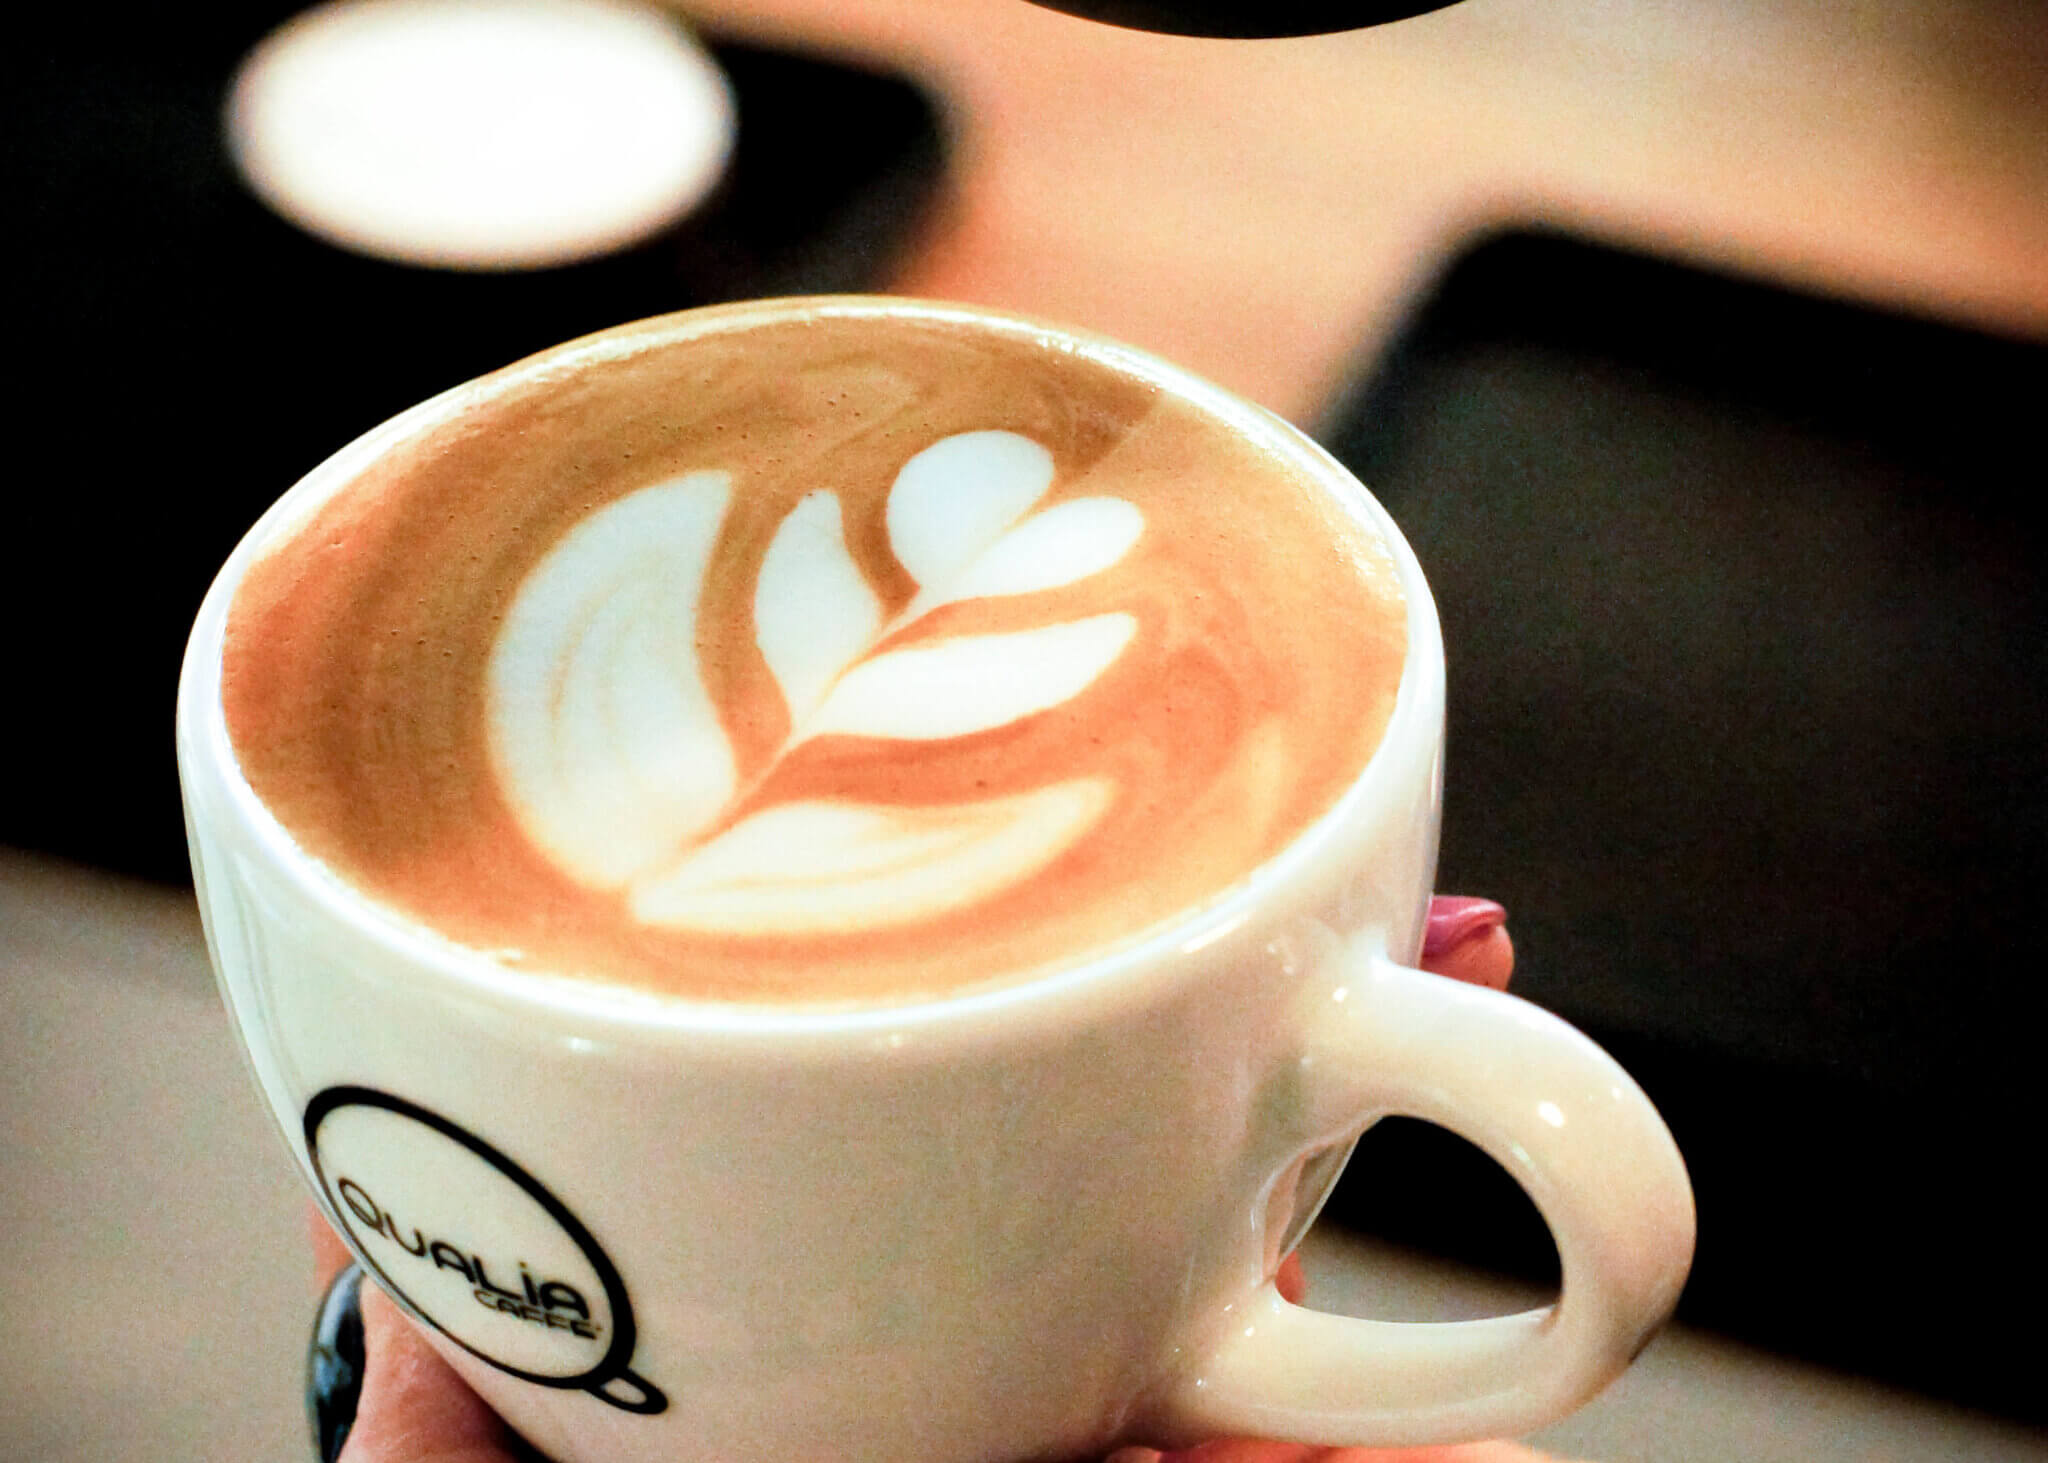 Qualia Caffe aromatyczna kawa w Twoim lokalu